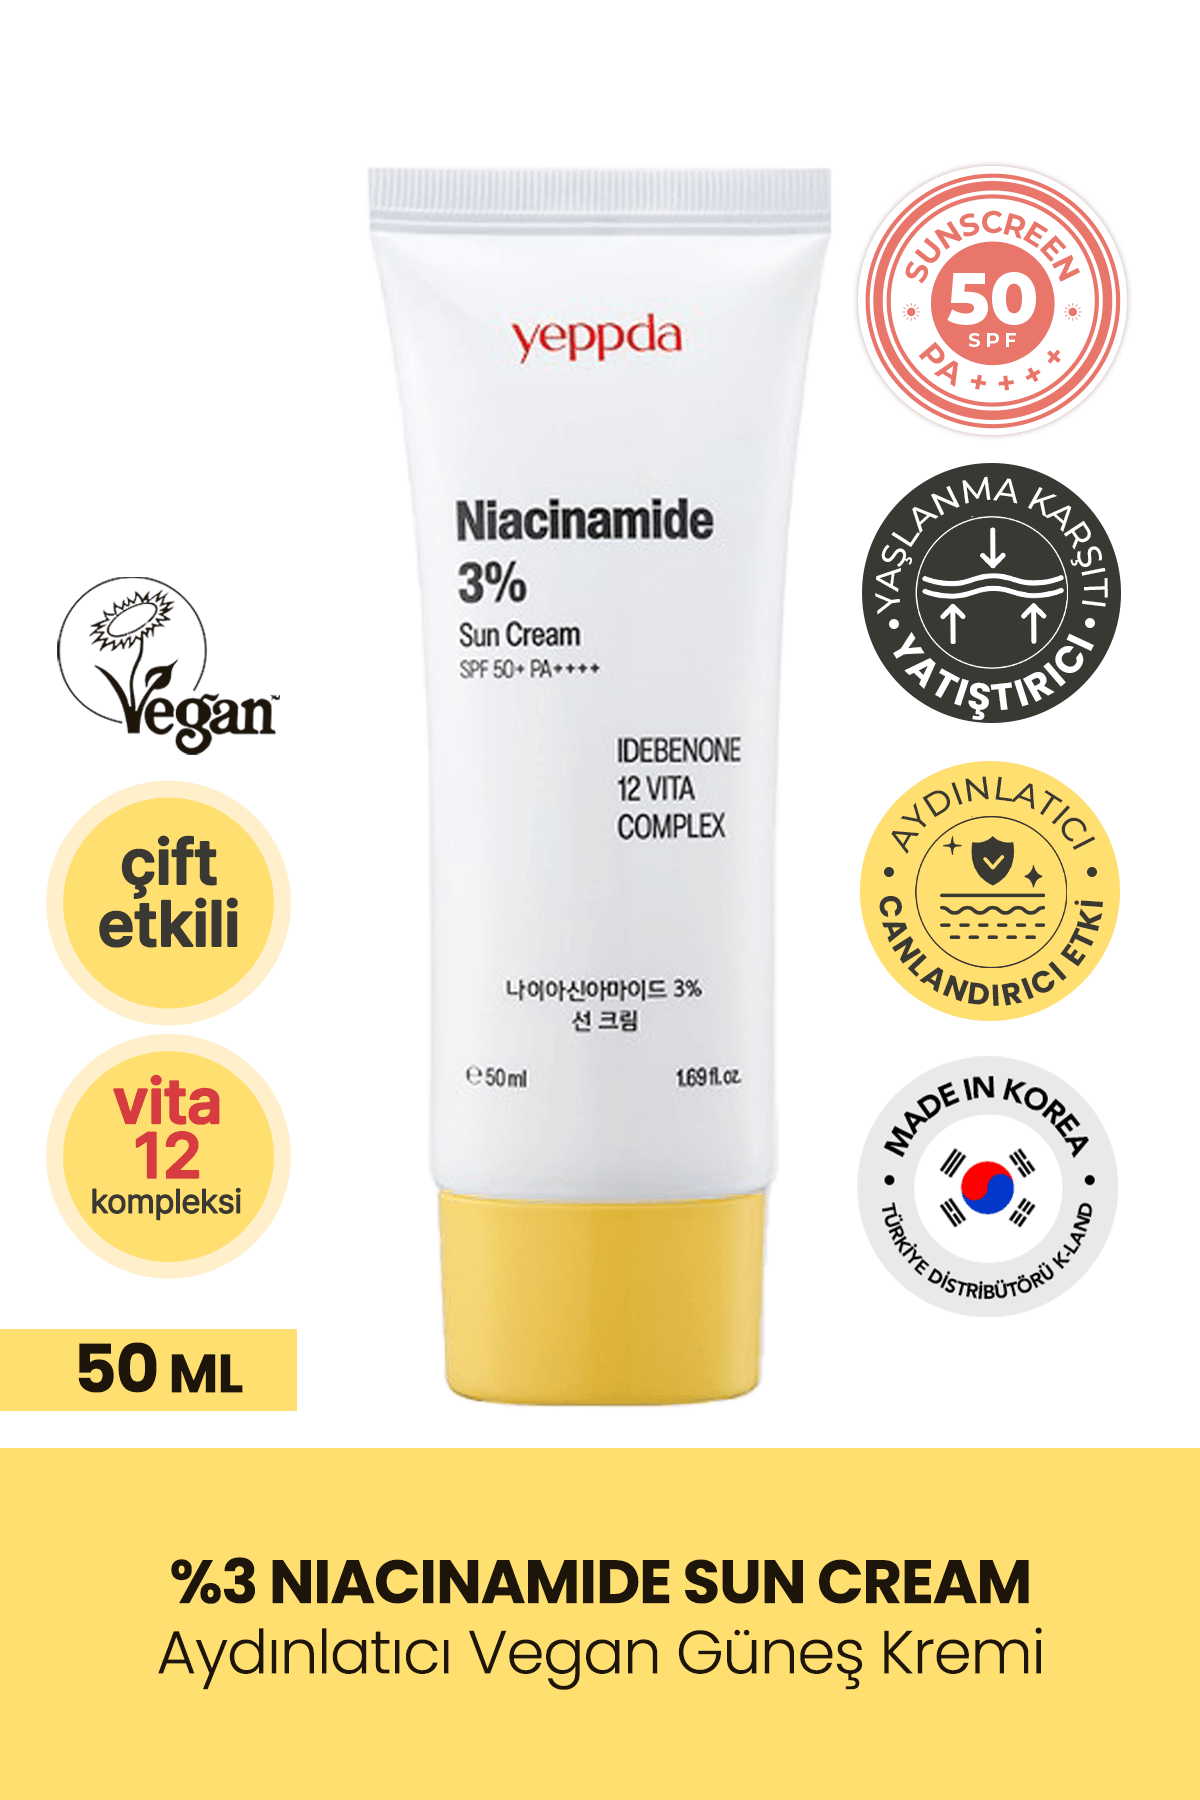 %3 Niacinamide İçeren Aydınlatıcı Vegan Güneş Kremi Yeppda Niacinamide Sun Cream SPF50+ PA++++ 50ml